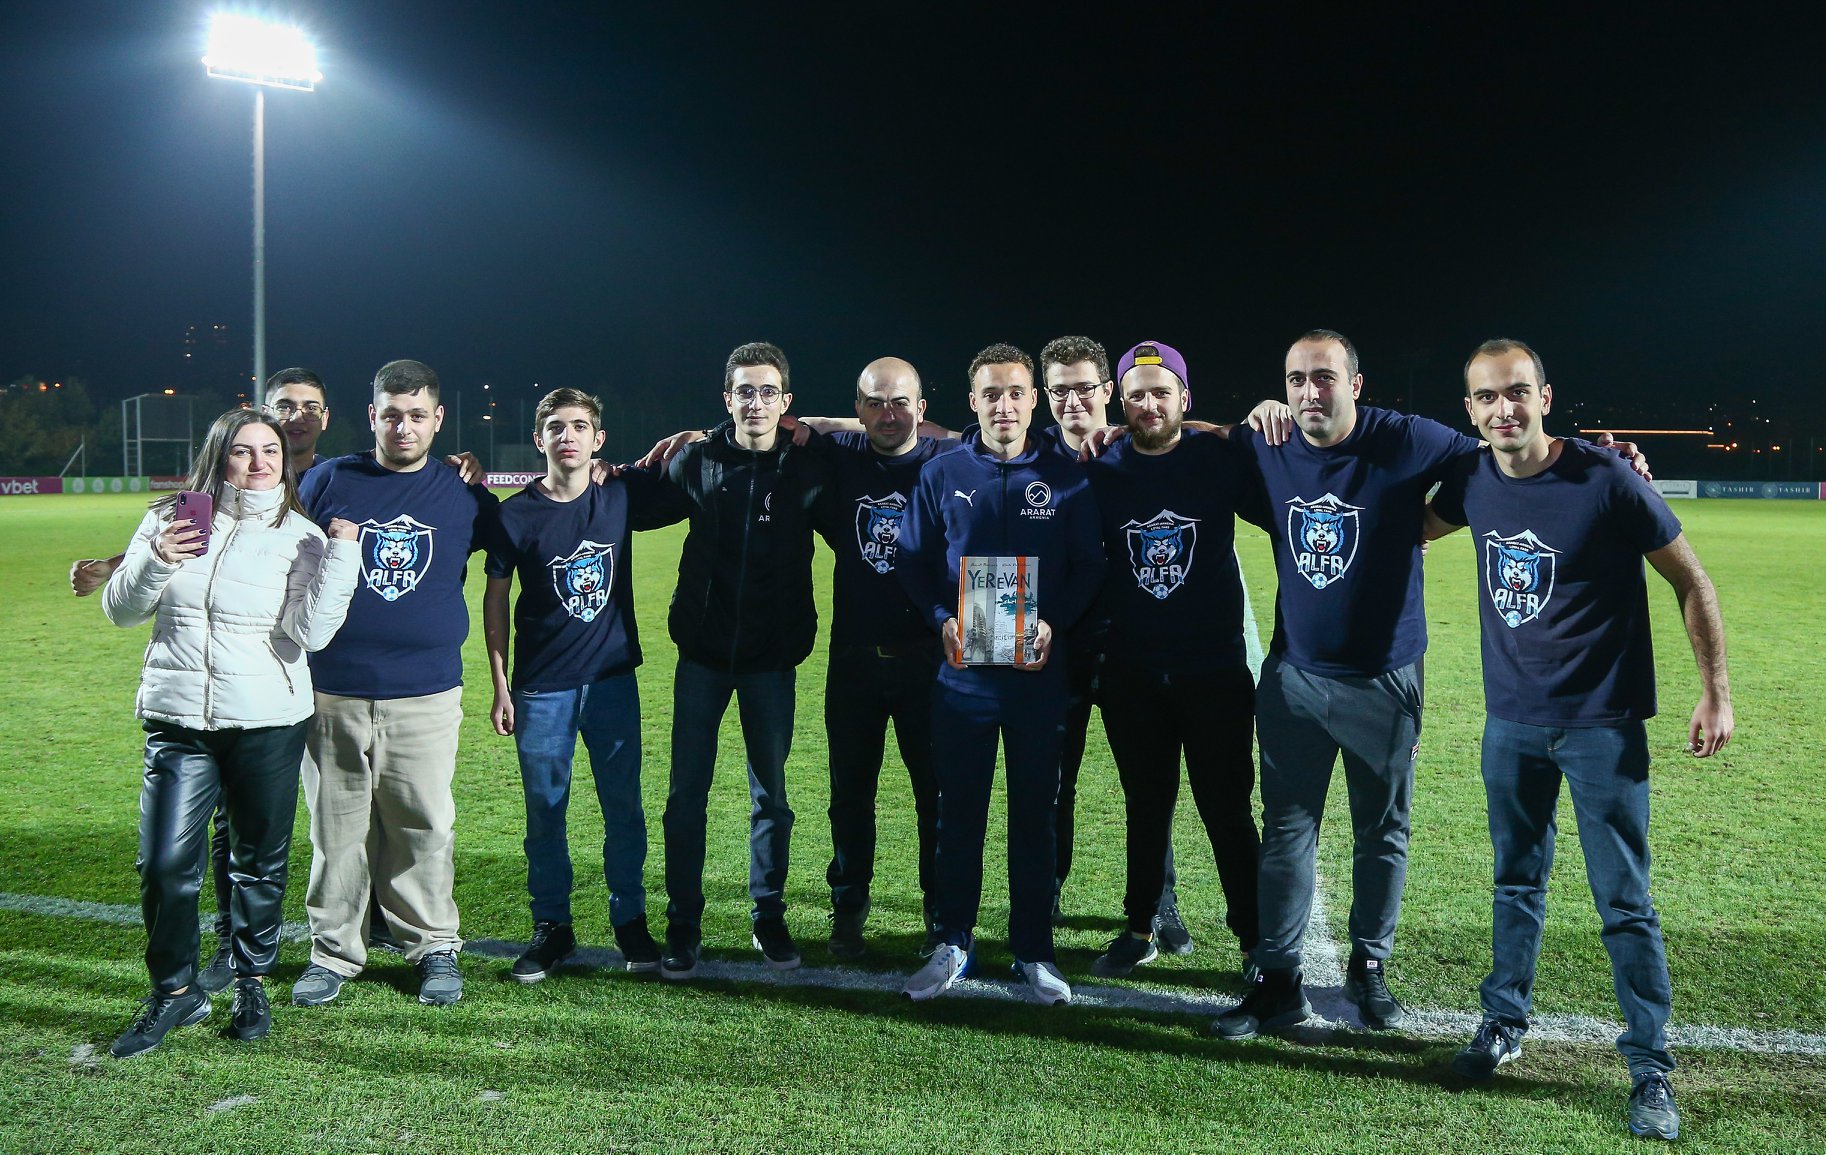 ALFA ֆան ակումբը հանձնեց սեպտեմբեր ամսվա լավագույն ֆուտբոլիստի մրցանակը